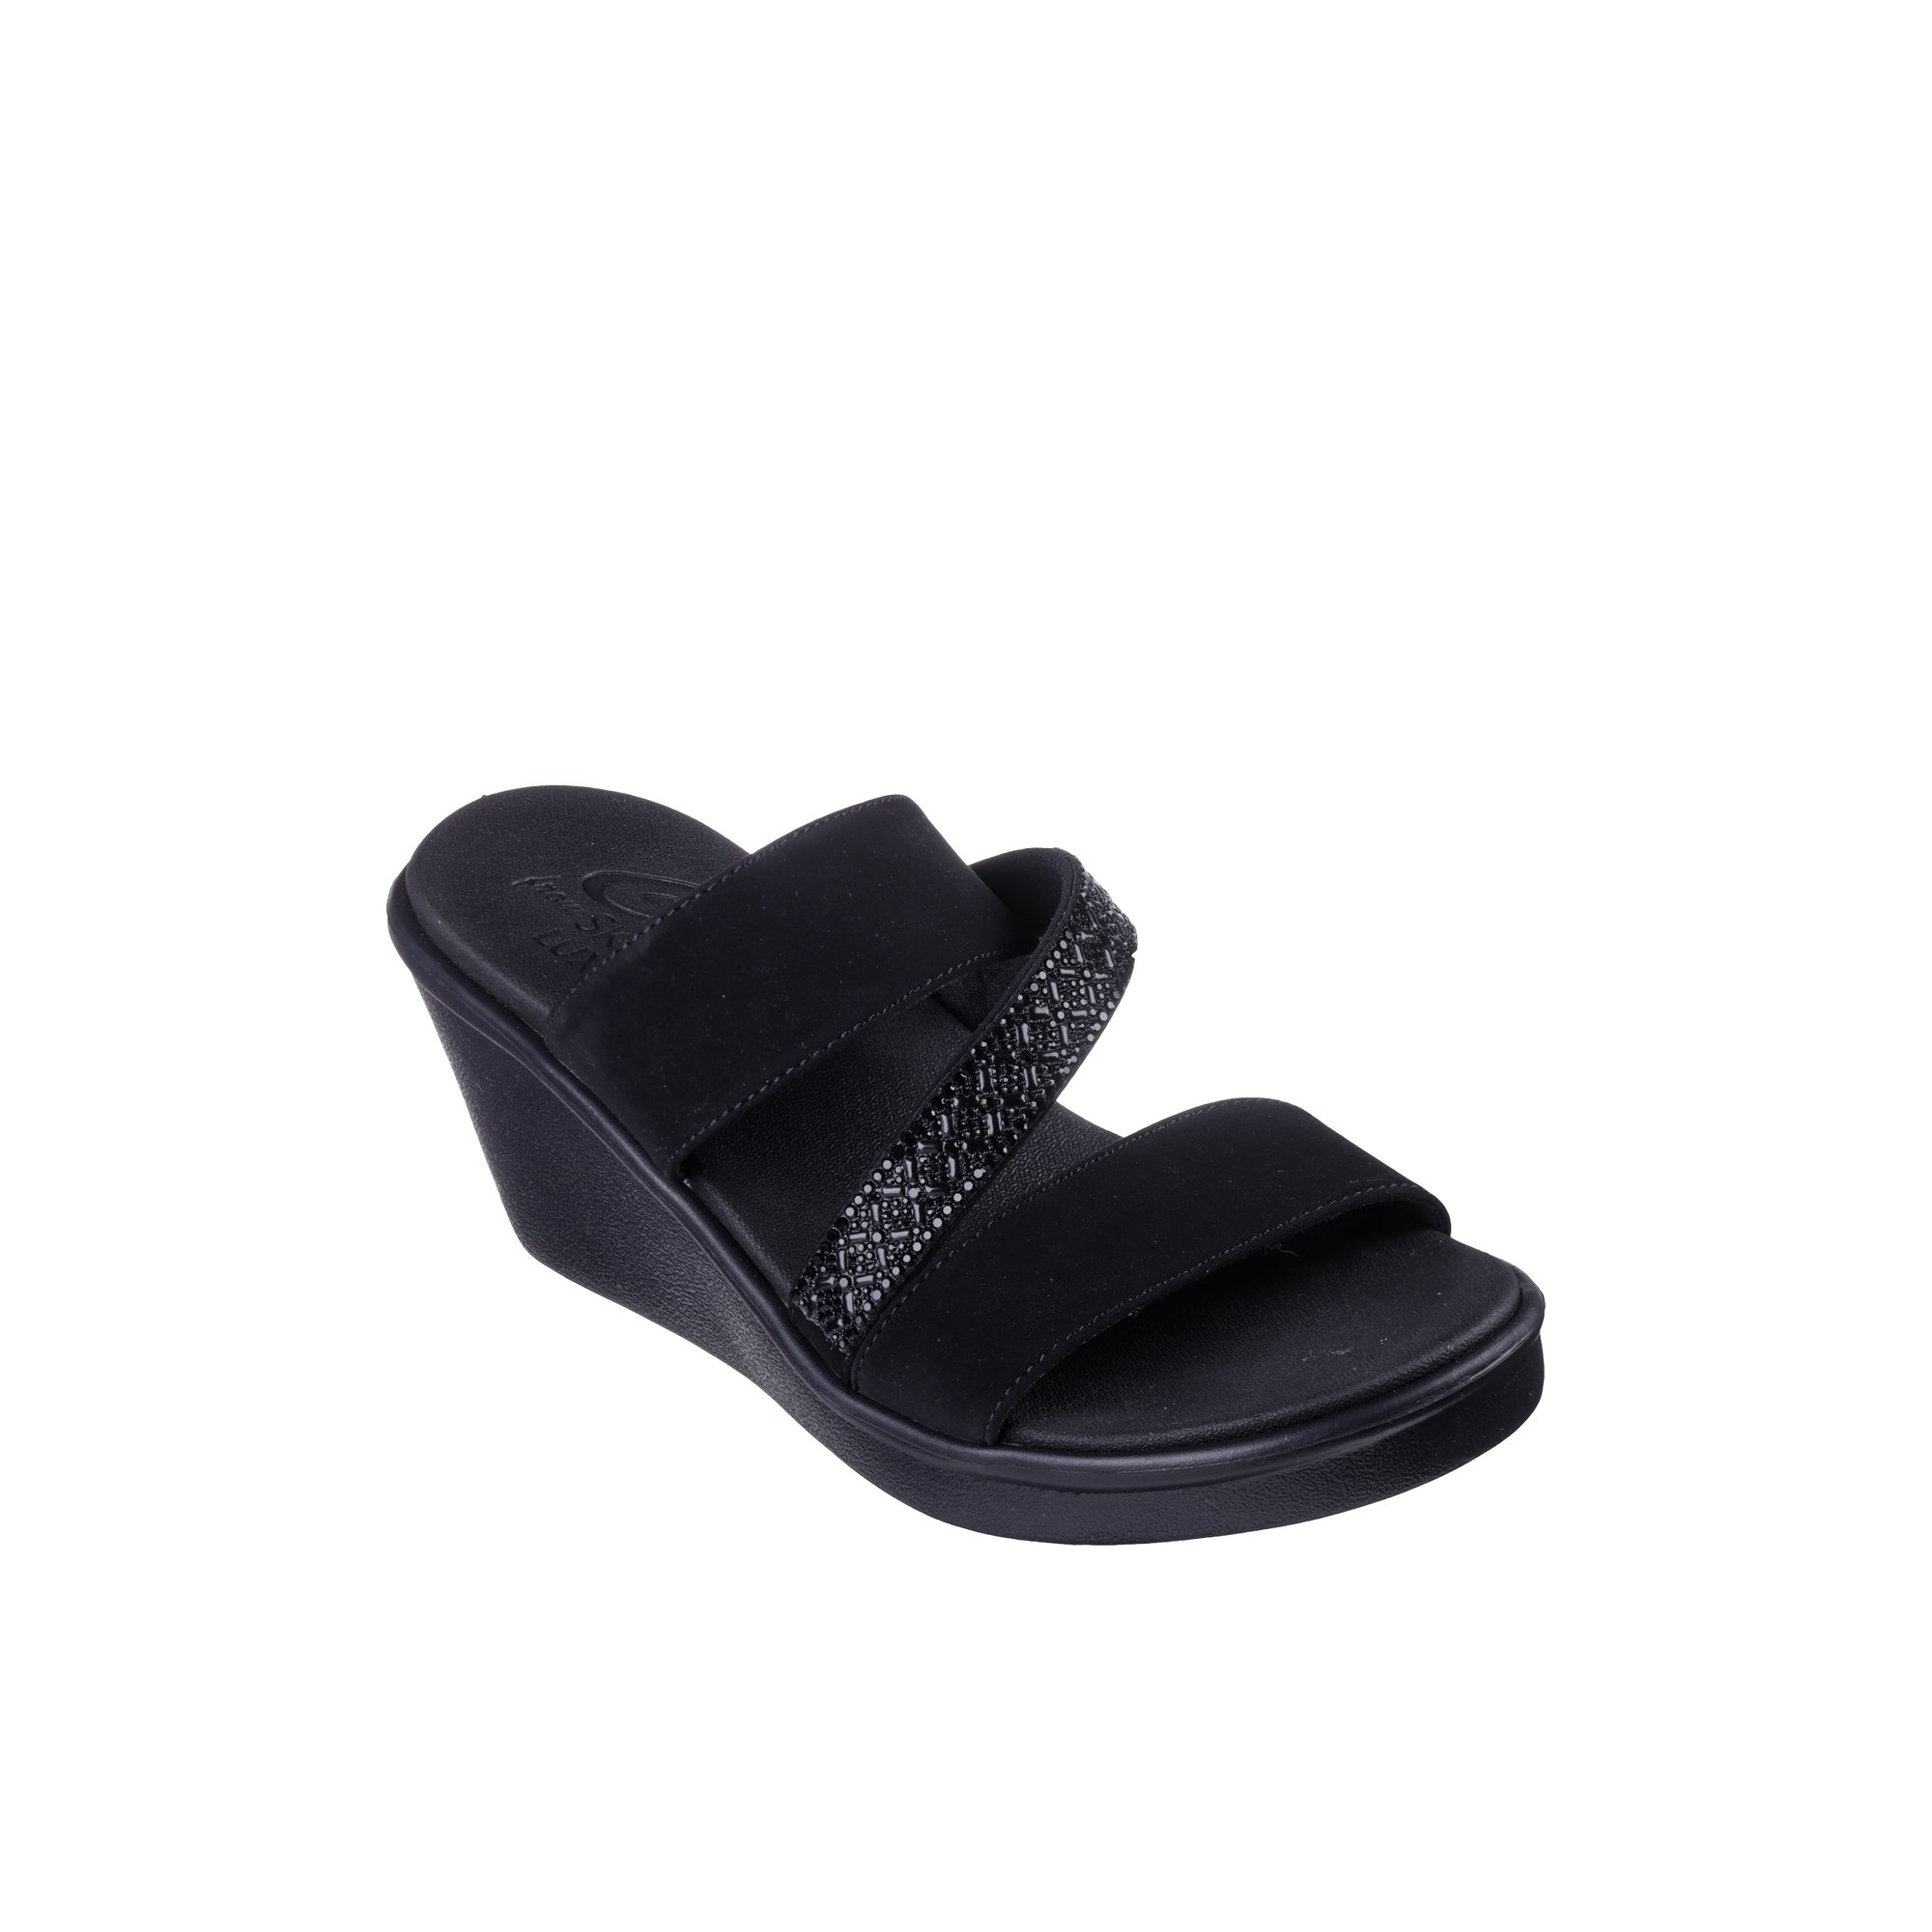 Skechers Rumble Glam - Women's Footwear Sandals Wedges Black